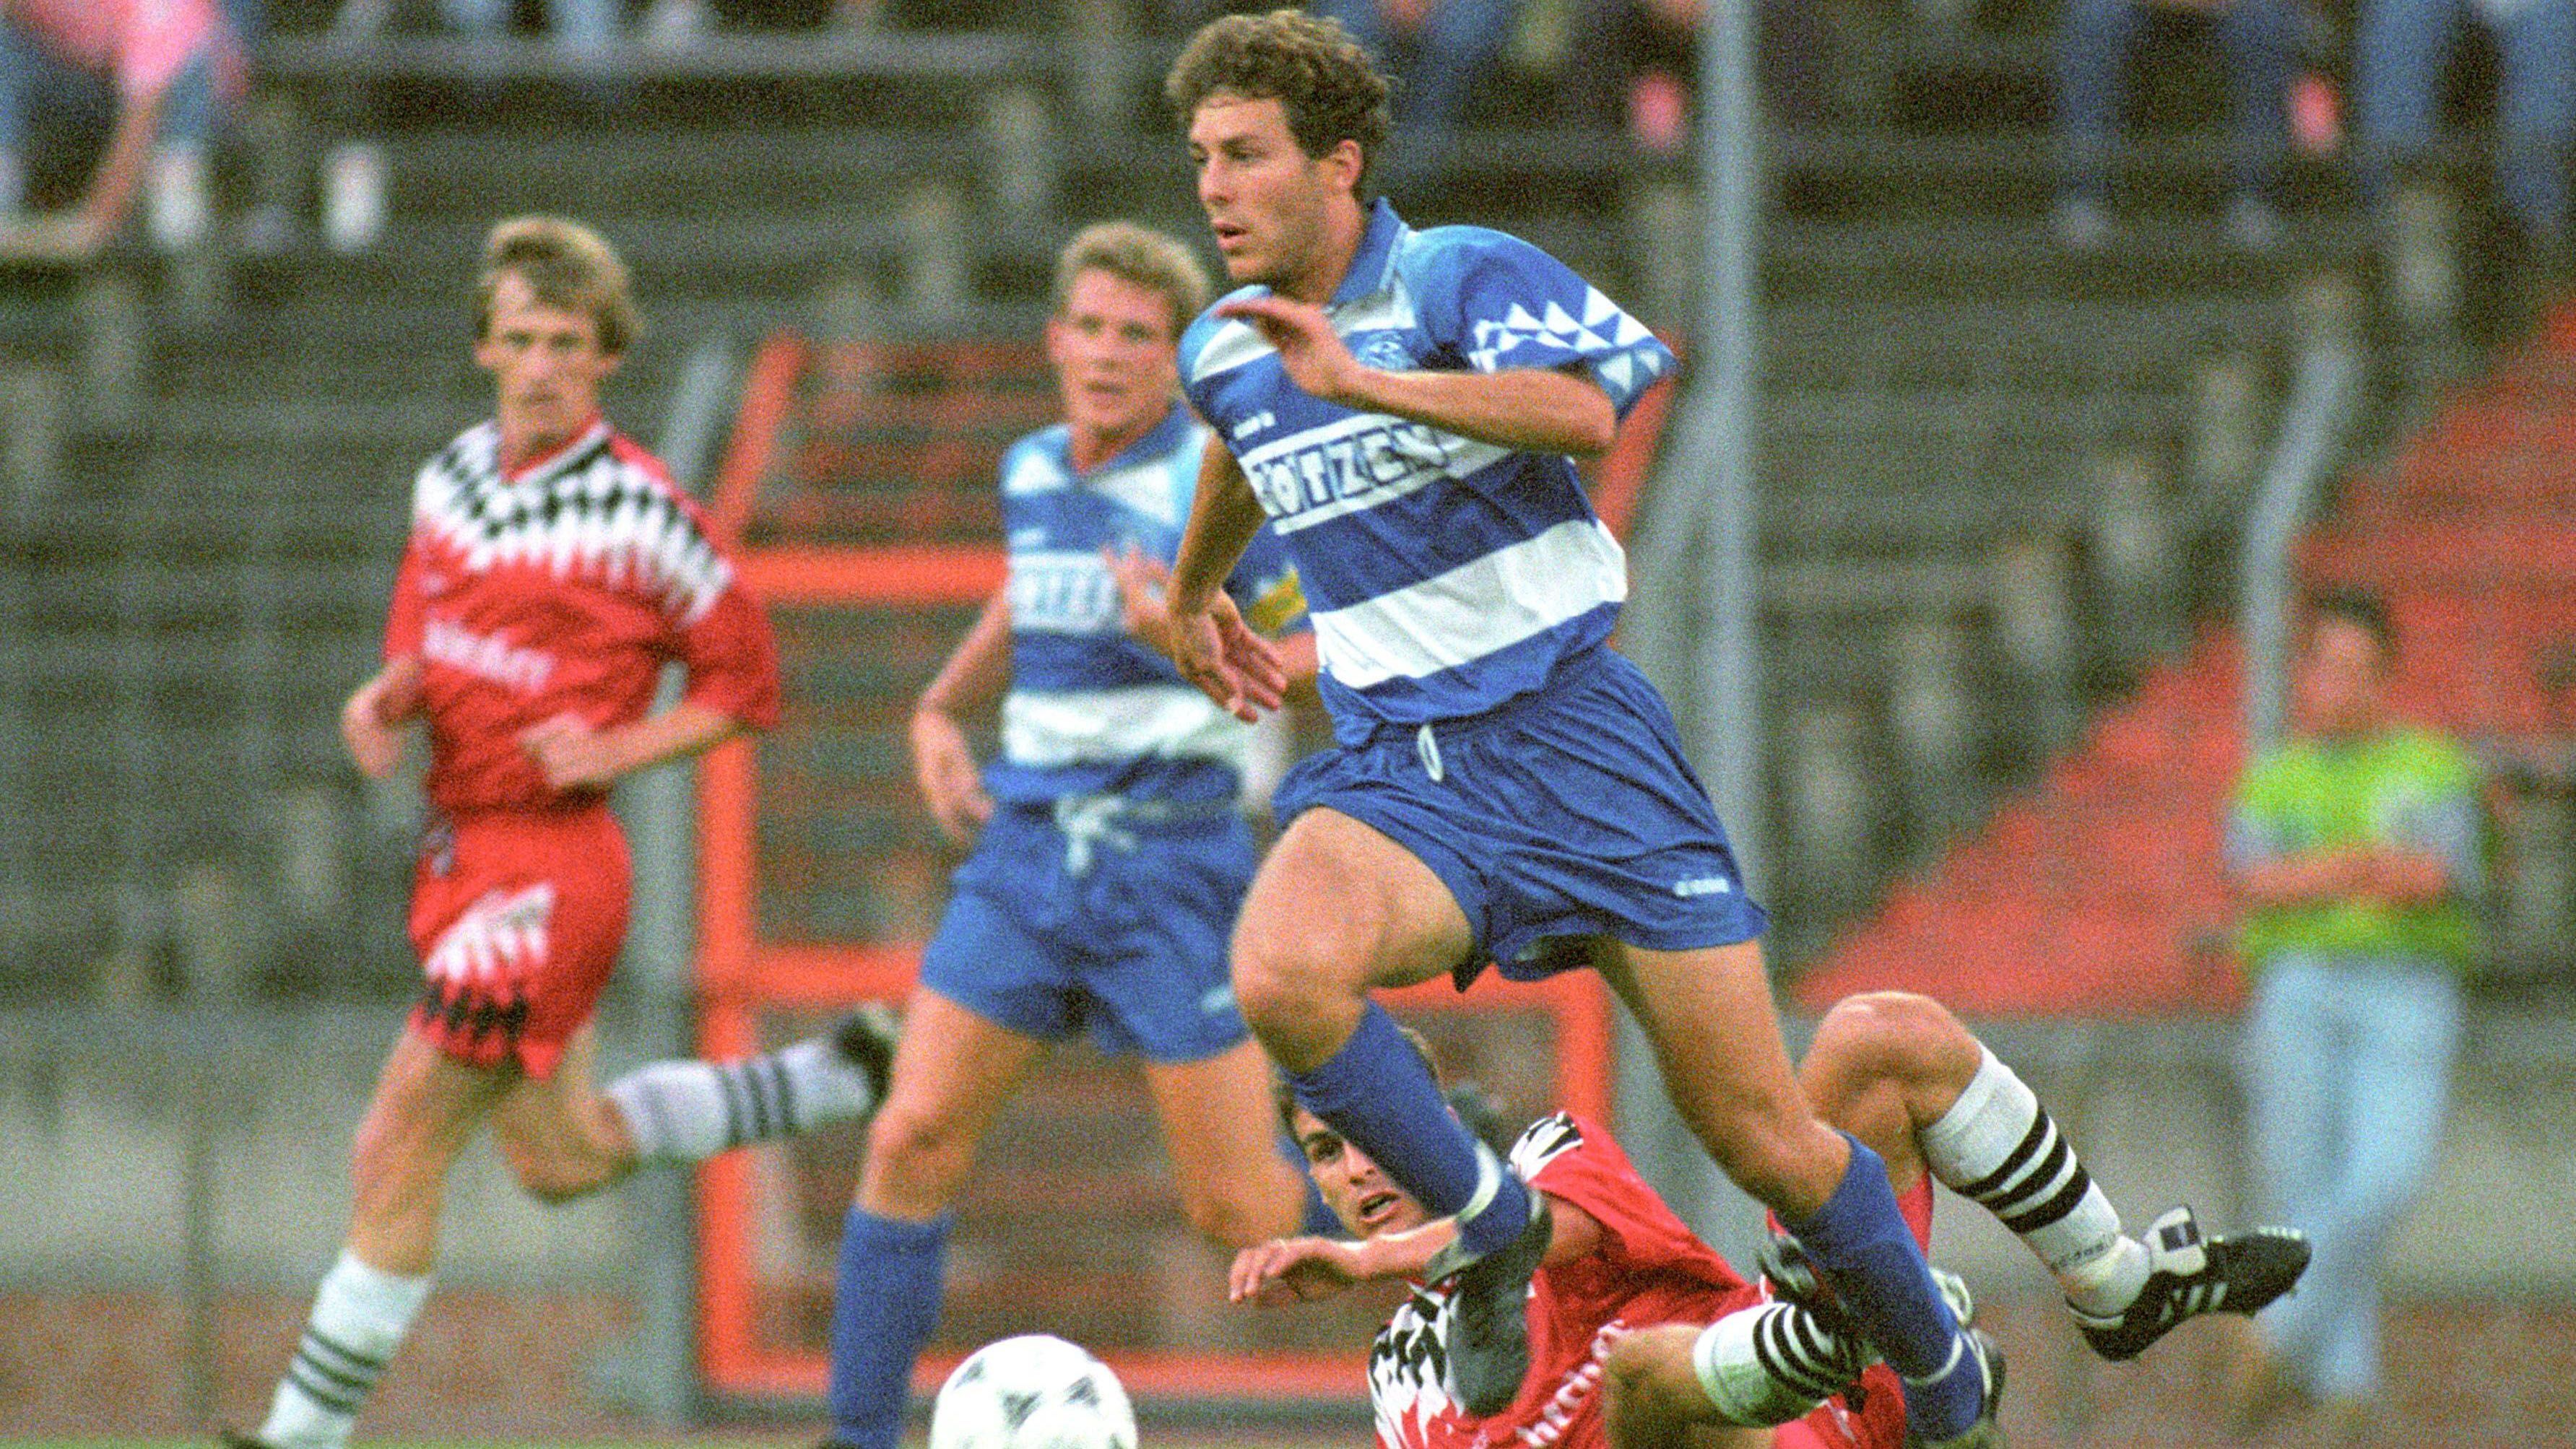 
                <strong>MSV Duisburg (Saison 1994/95, zwei Punkte, 7:27 Tore)</strong><br>
                Mit zwei Unentschieden startete der MSV Duisburg eigentlich solide in die Saison 1994/95. Doch im Anschluss folgten gleich neun Niederlagen. Eine Aufholjagd in der zweiten Saisonhälfte kam zu spät - der MSV stieg als Vorletzter ab. Dynamo Dresden wurde 18. Mit dabei war damals übrigens ein gewisser Rachid Azzouzi, der heute als Sportdirektor in Fürth tätig ist. 
              